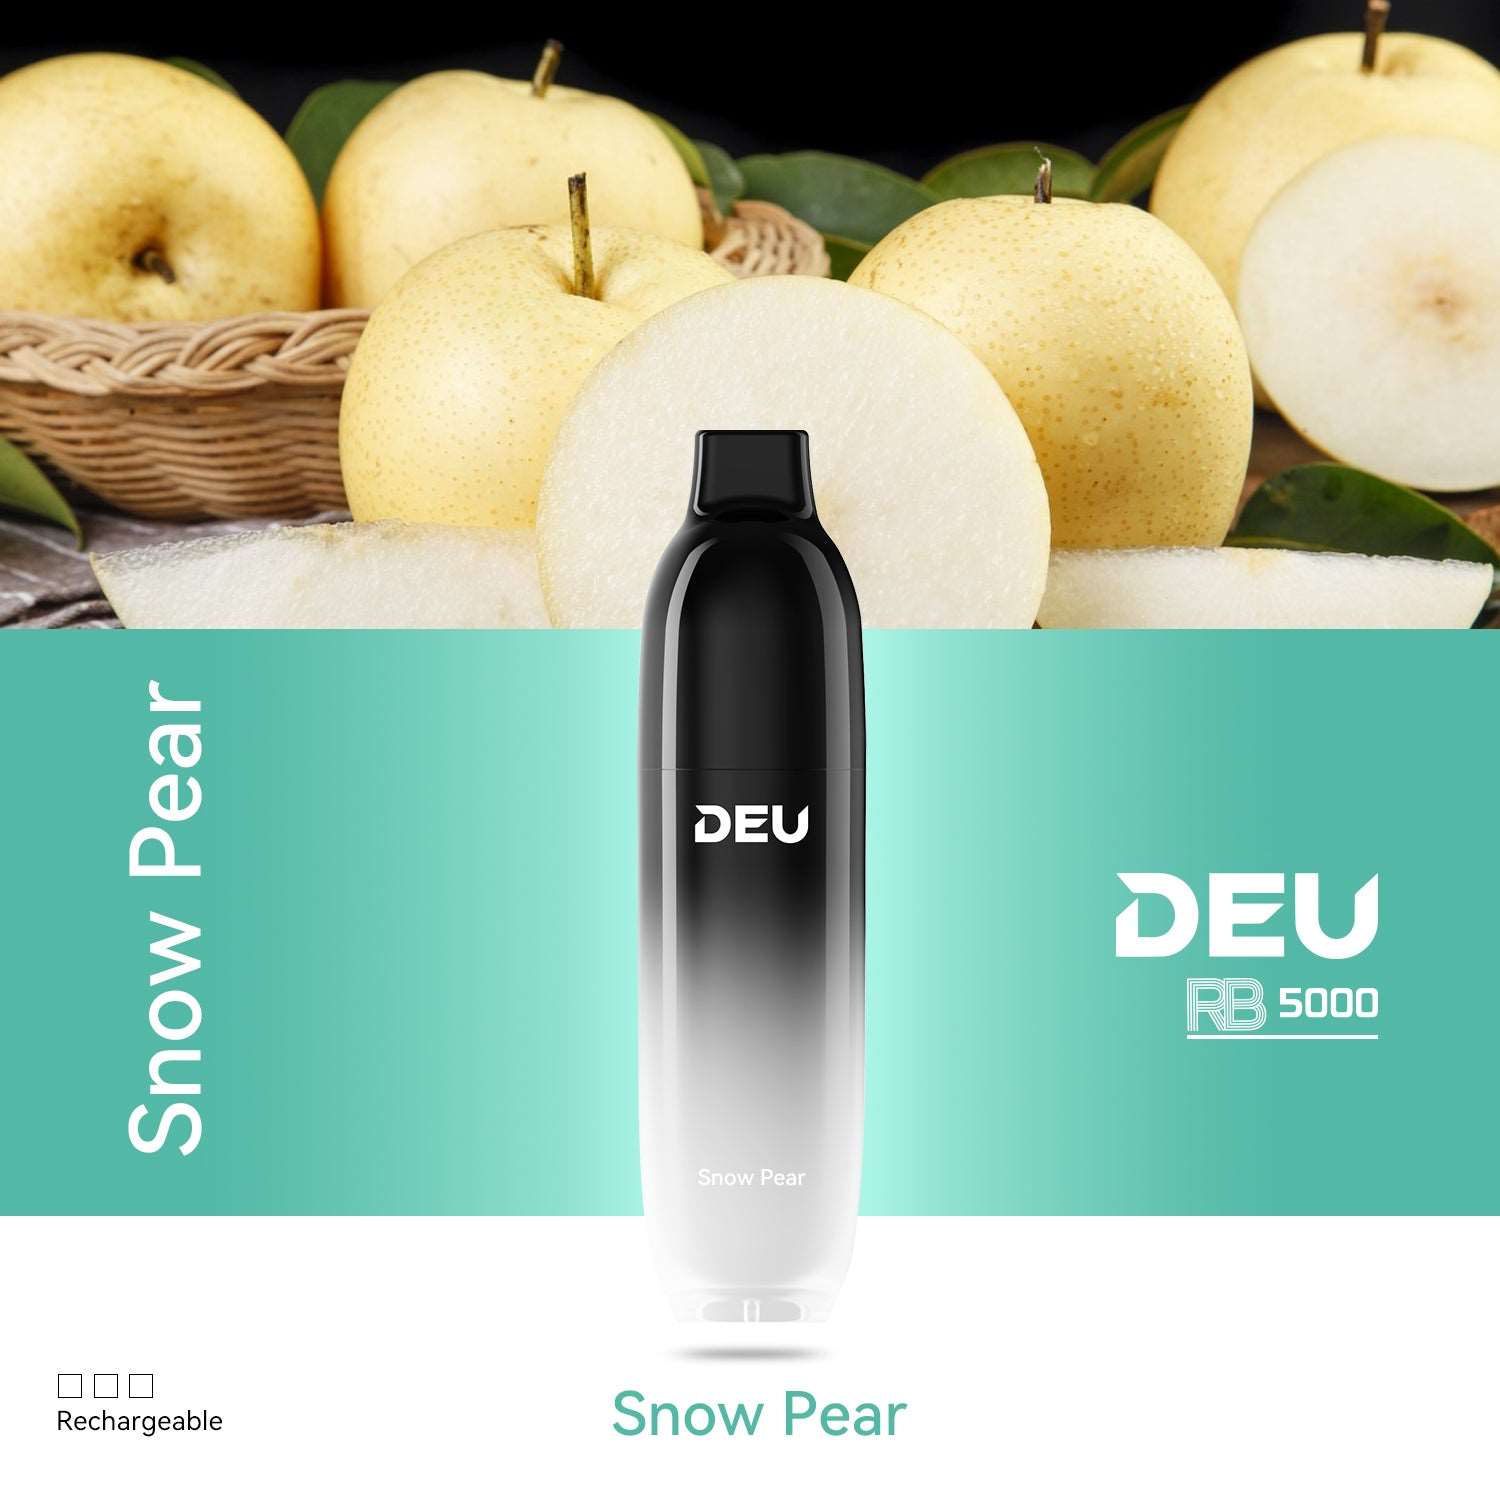 DEU RB5000 - Snow Pear